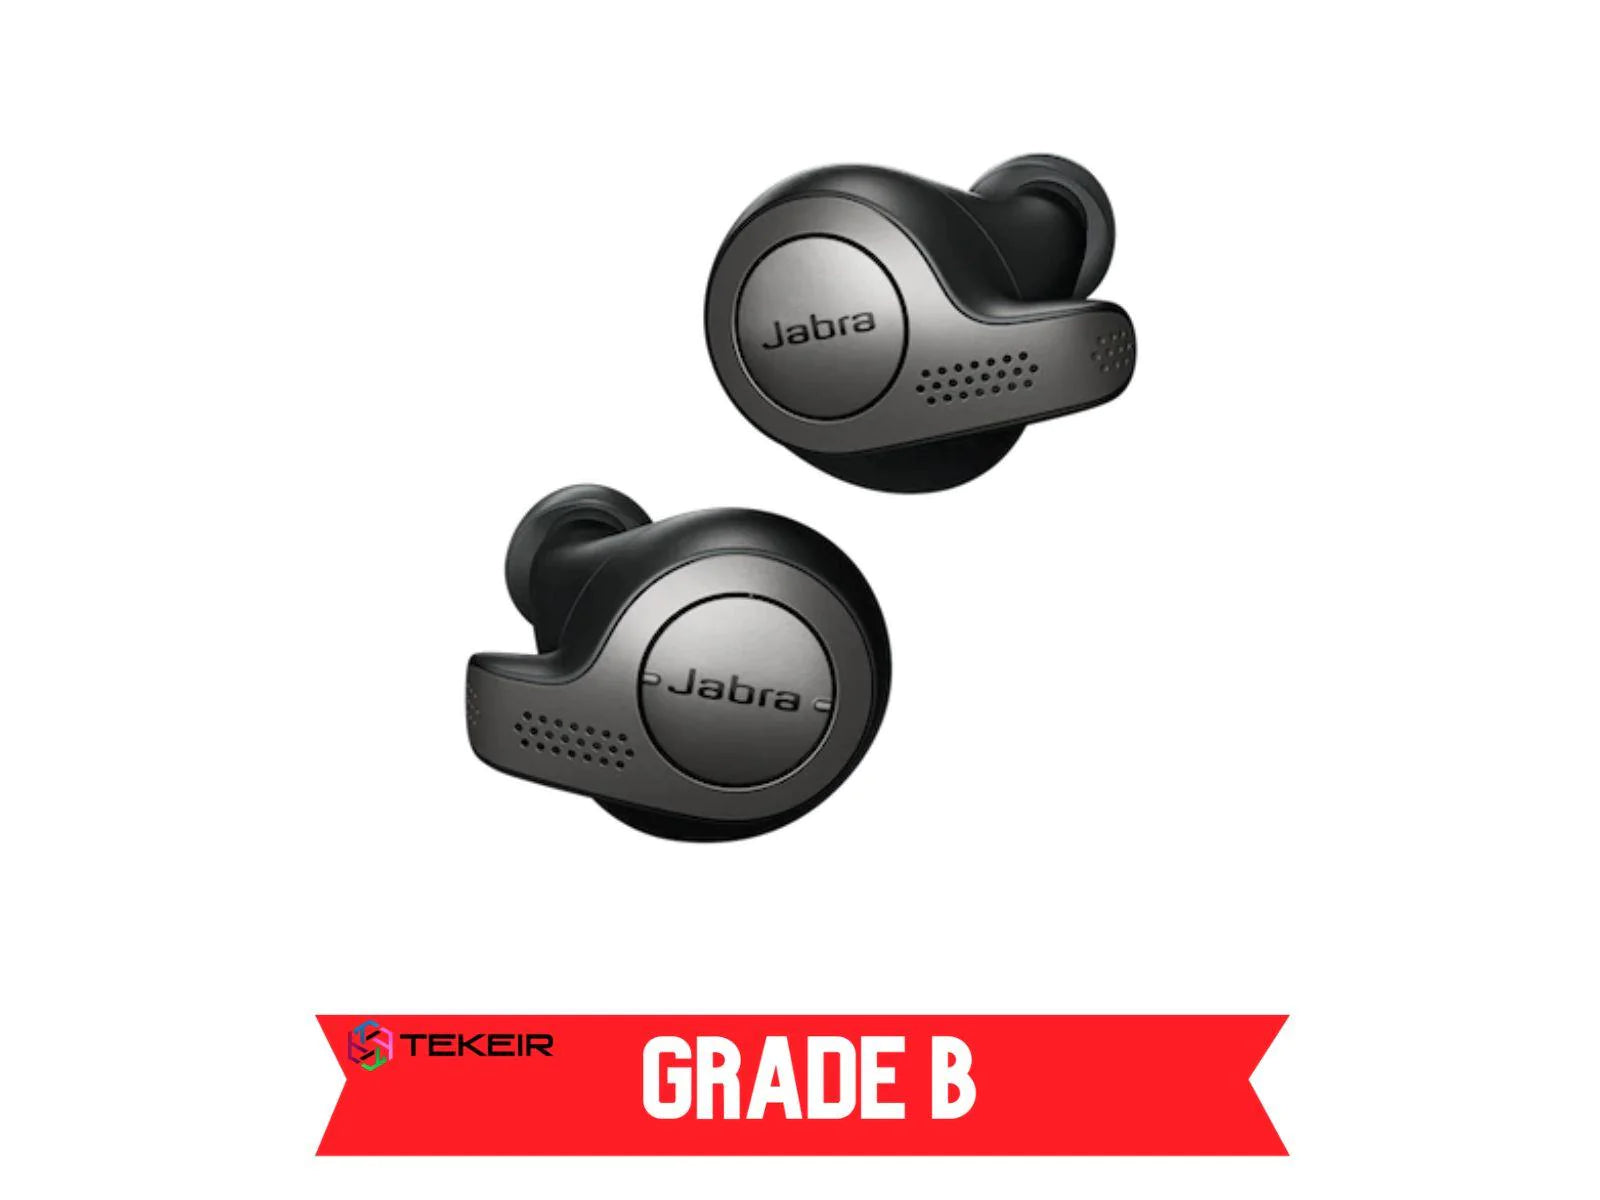 Close up picture of the Titanium Black Jabra Elite 65 In Ear Bluetooth Headphones Grade B